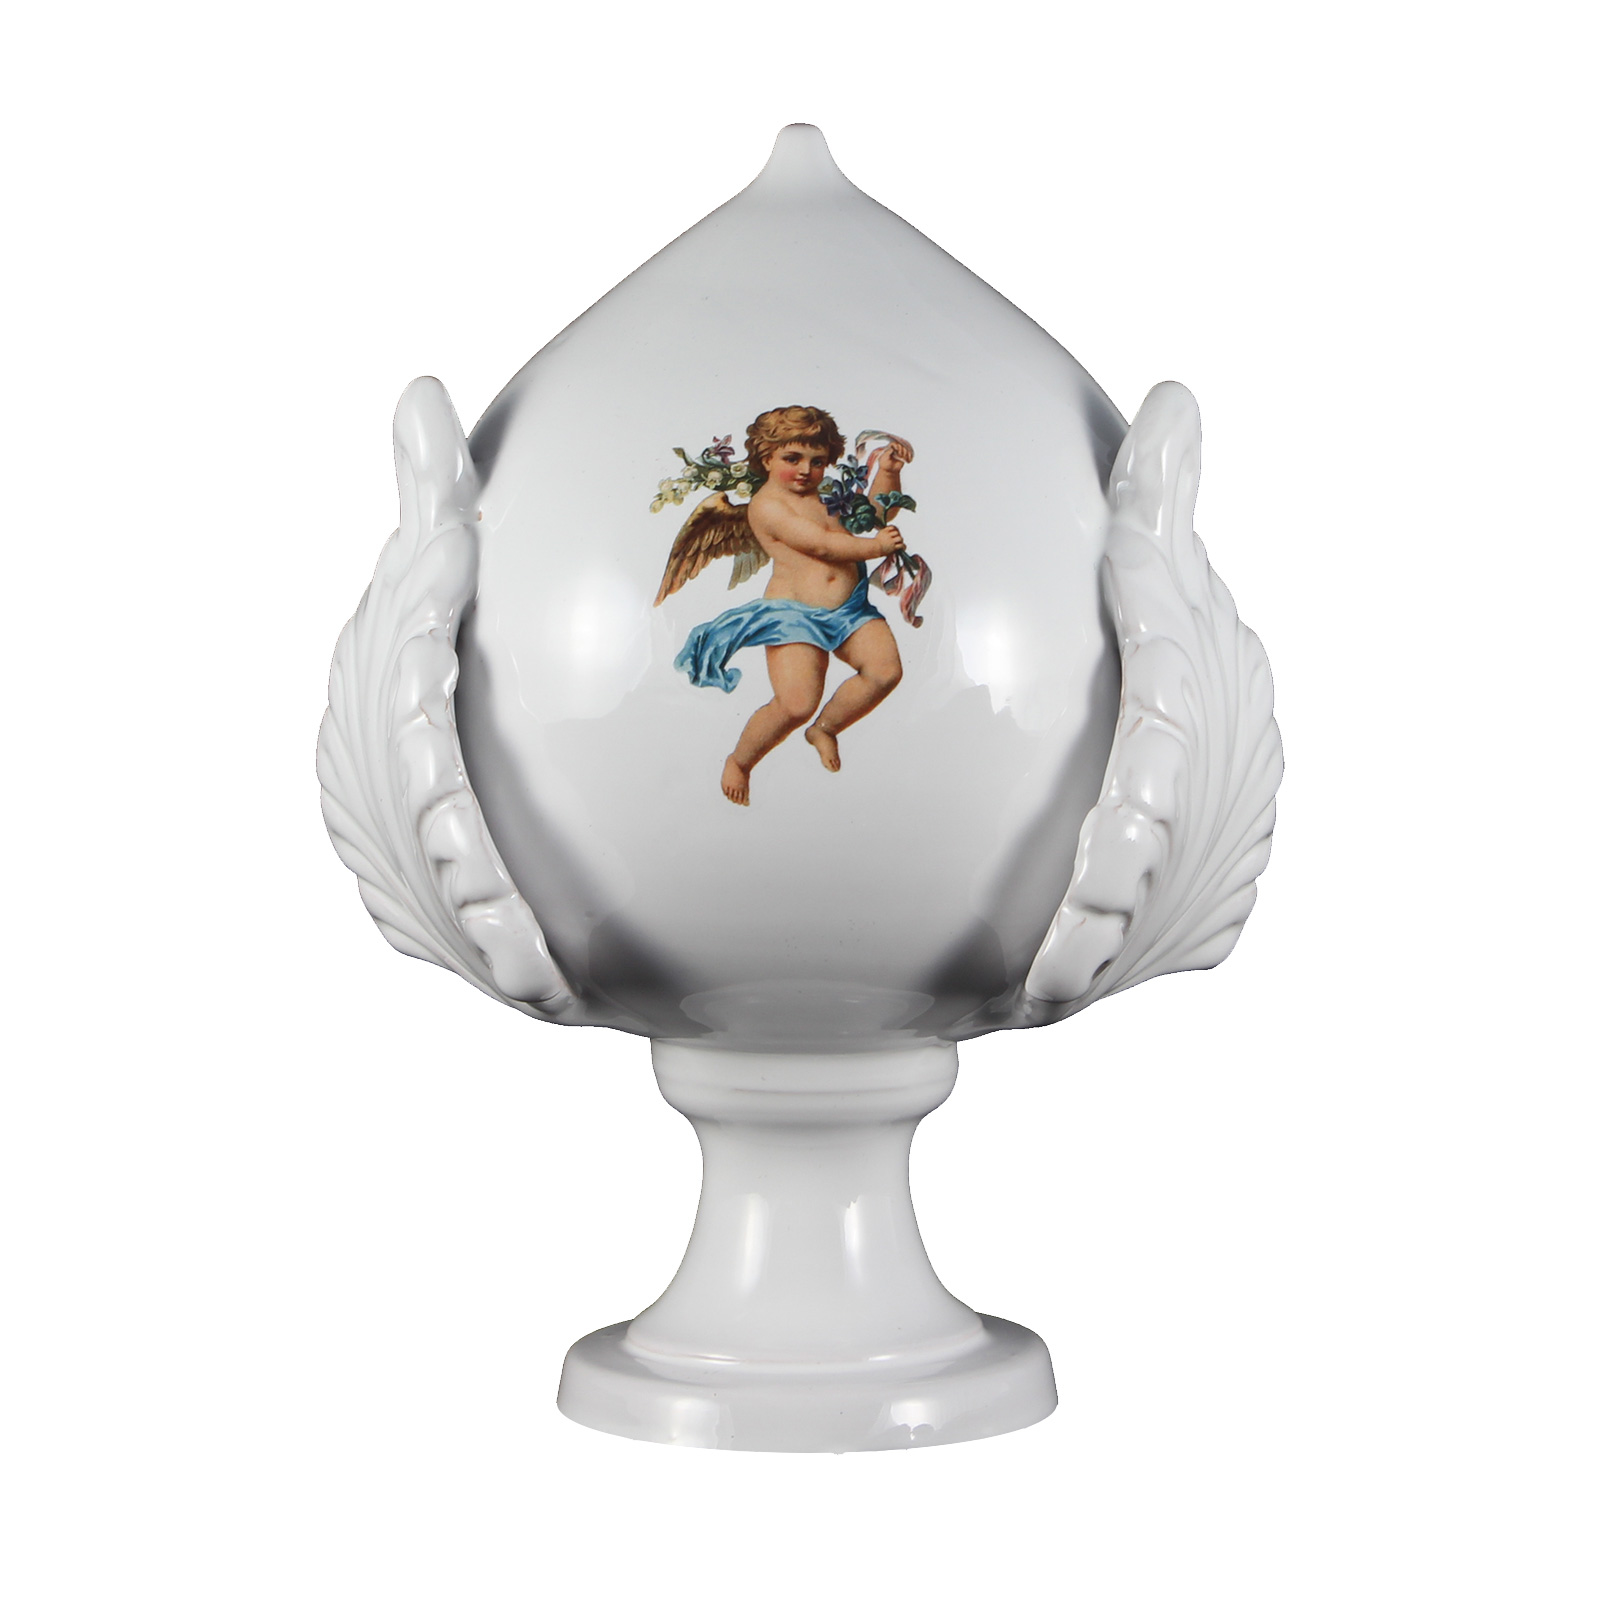 Immagine di Pomo pugliese (pumo) in ceramica decorata - Decorato con angeli - Altezza 18 cm